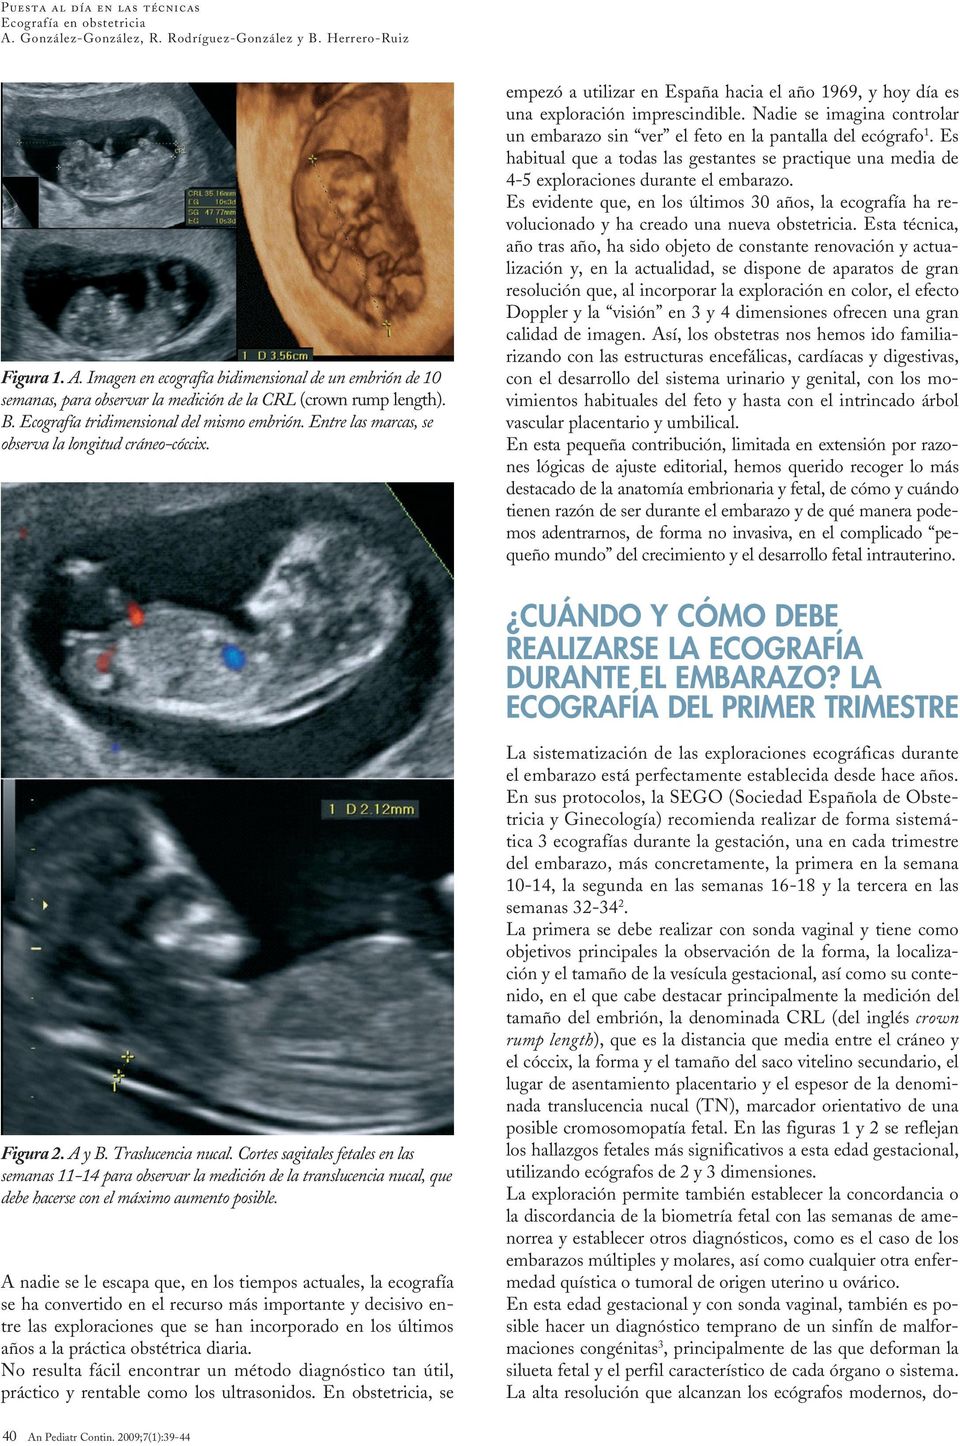 Nadie se imagina controlar un embarazo sin ver el feto en la pantalla del ecógrafo 1. Es habitual que a todas las gestantes se practique una media de 4-5 exploraciones durante el embarazo.